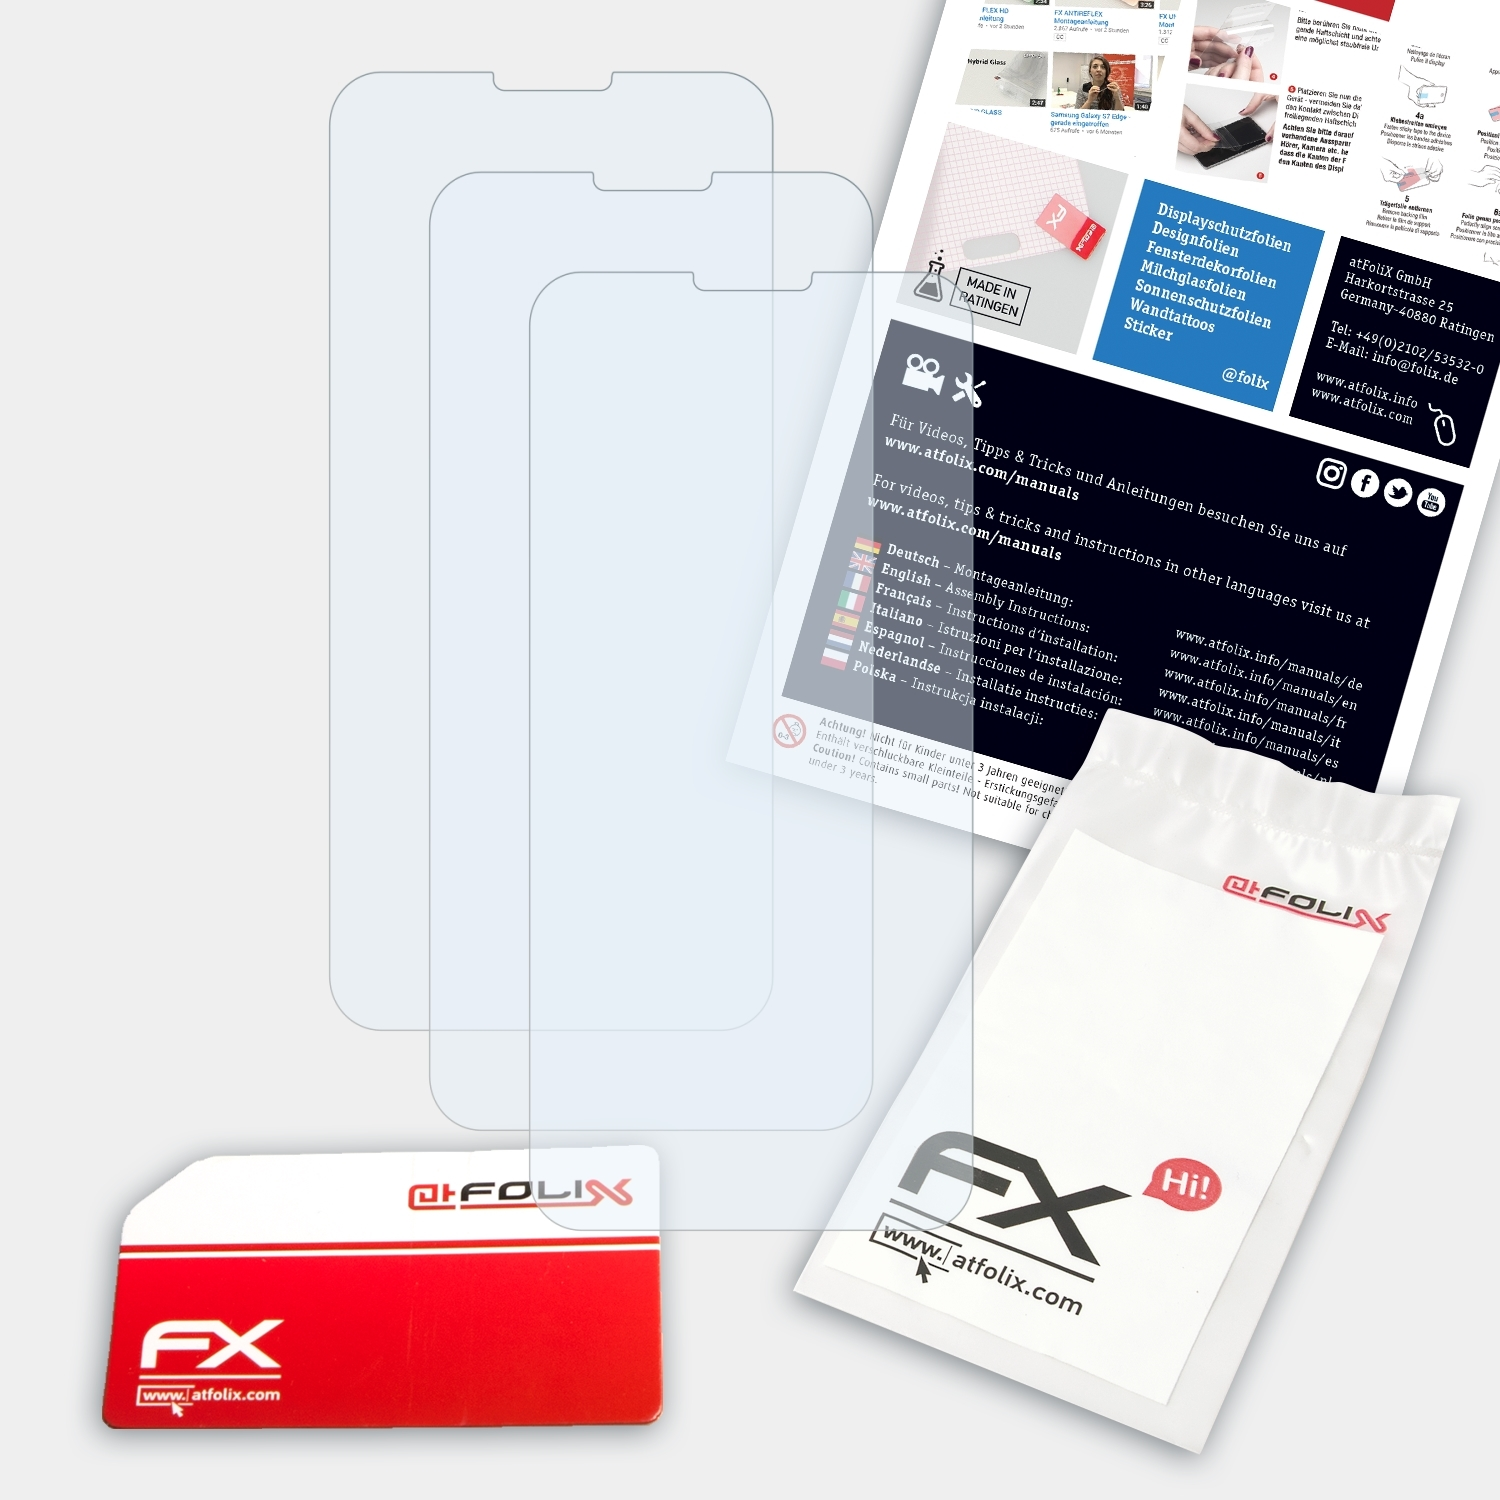 Y83 Pro) 3x FX-Clear Displayschutz(für ATFOLIX Vivo